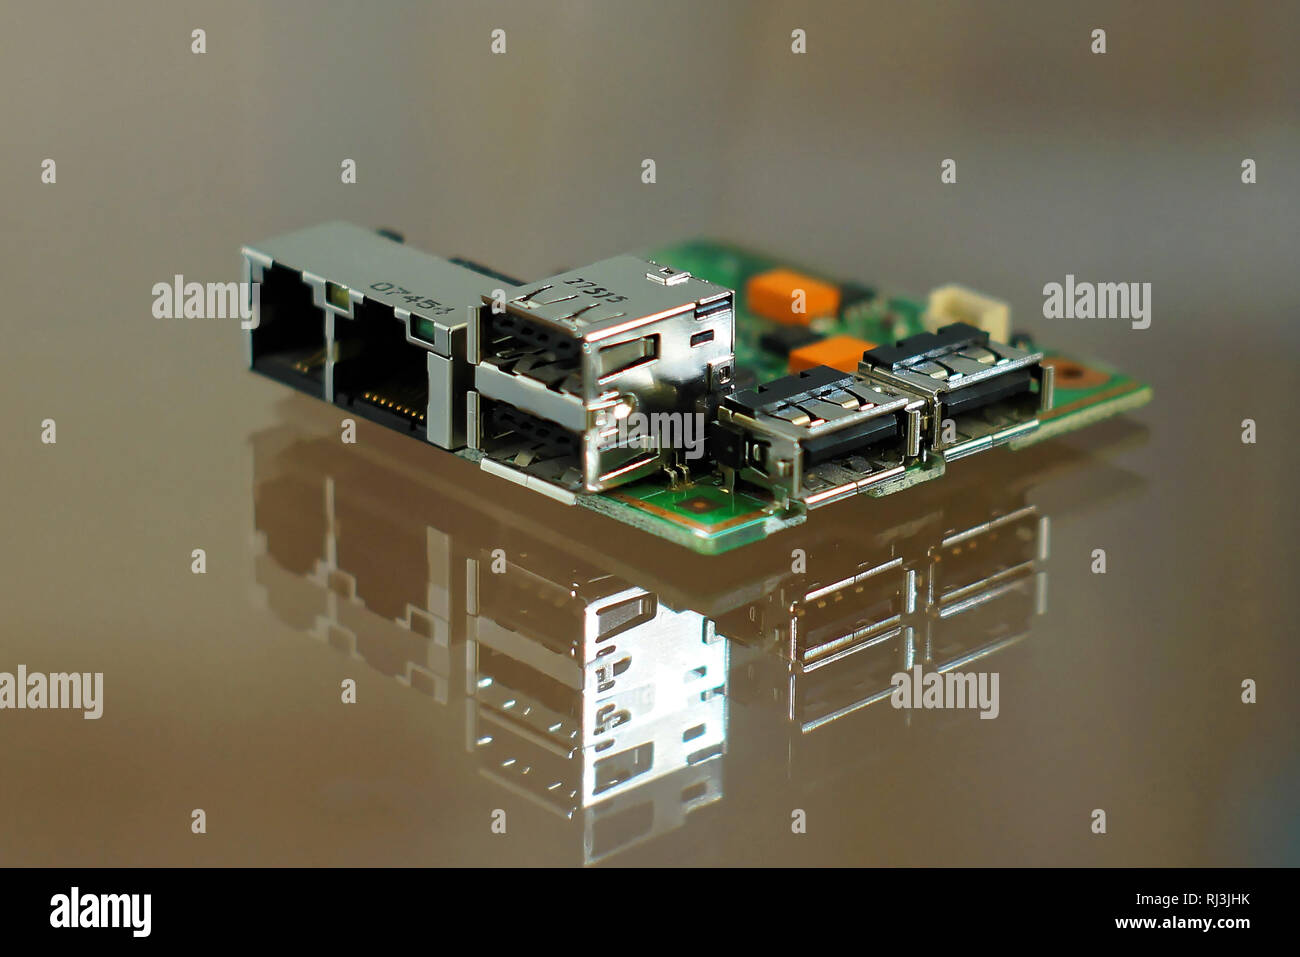 Mikrocomputer board - elektronische Komponenten auf Leiterplatten  montierten-Leiterplatte mit Netzwerk, Telefon- und USB-Anschlüsse an Bord  Seiten Stockfotografie - Alamy